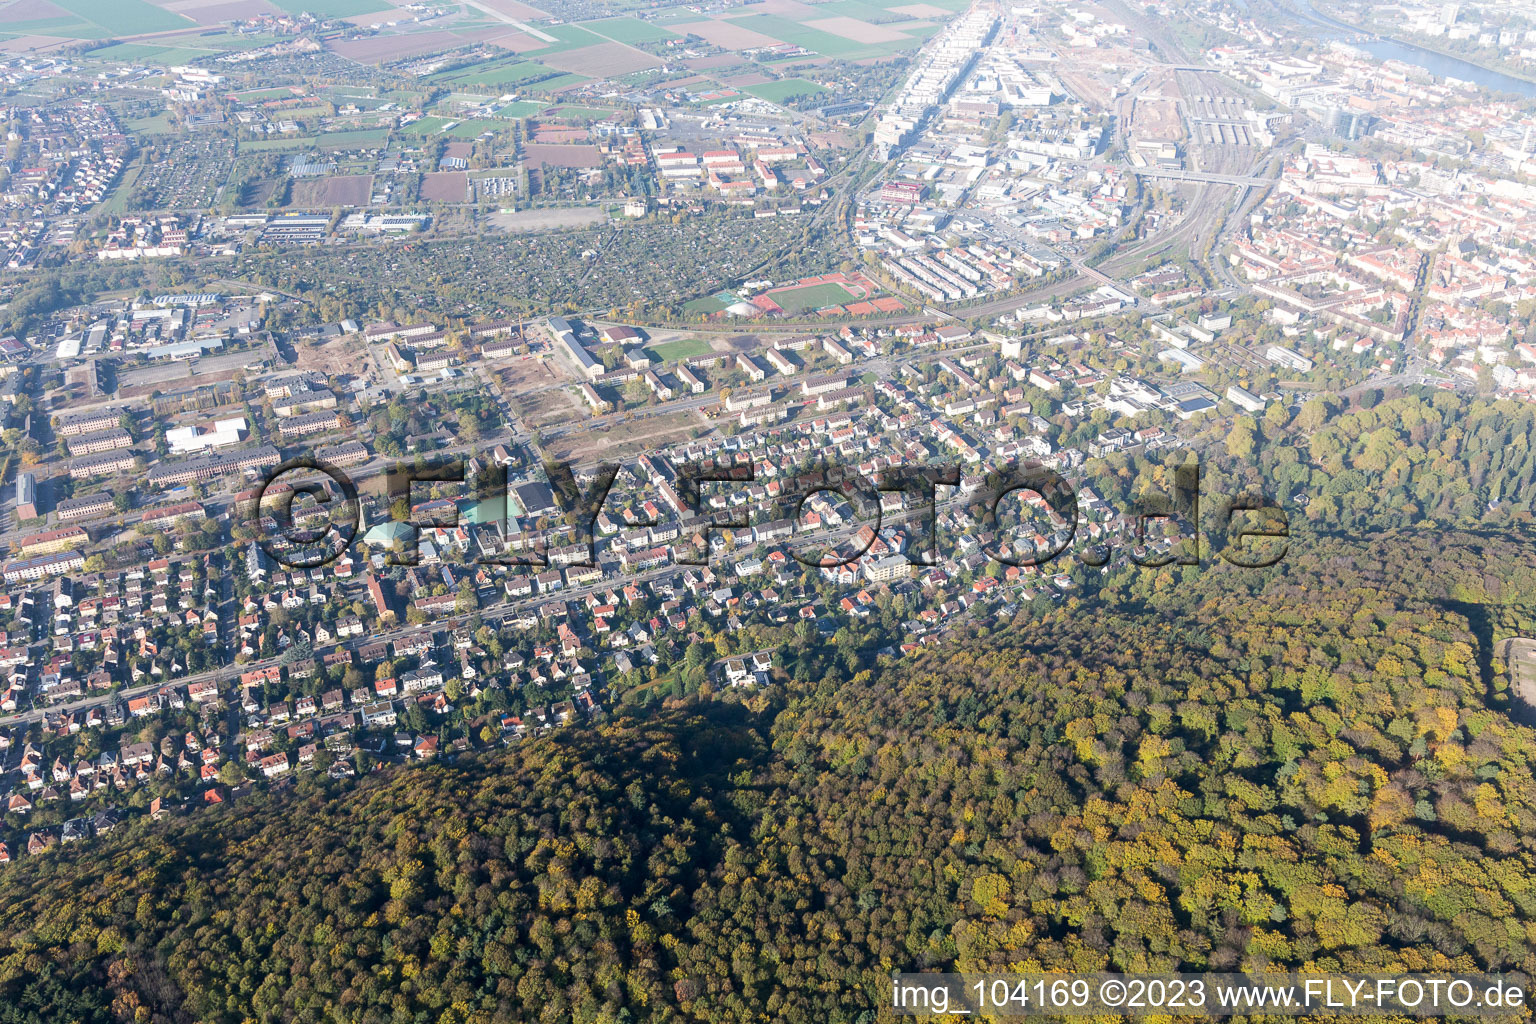 Luftbild von Ortsteil Südstadt in Heidelberg im Bundesland Baden-Württemberg, Deutschland